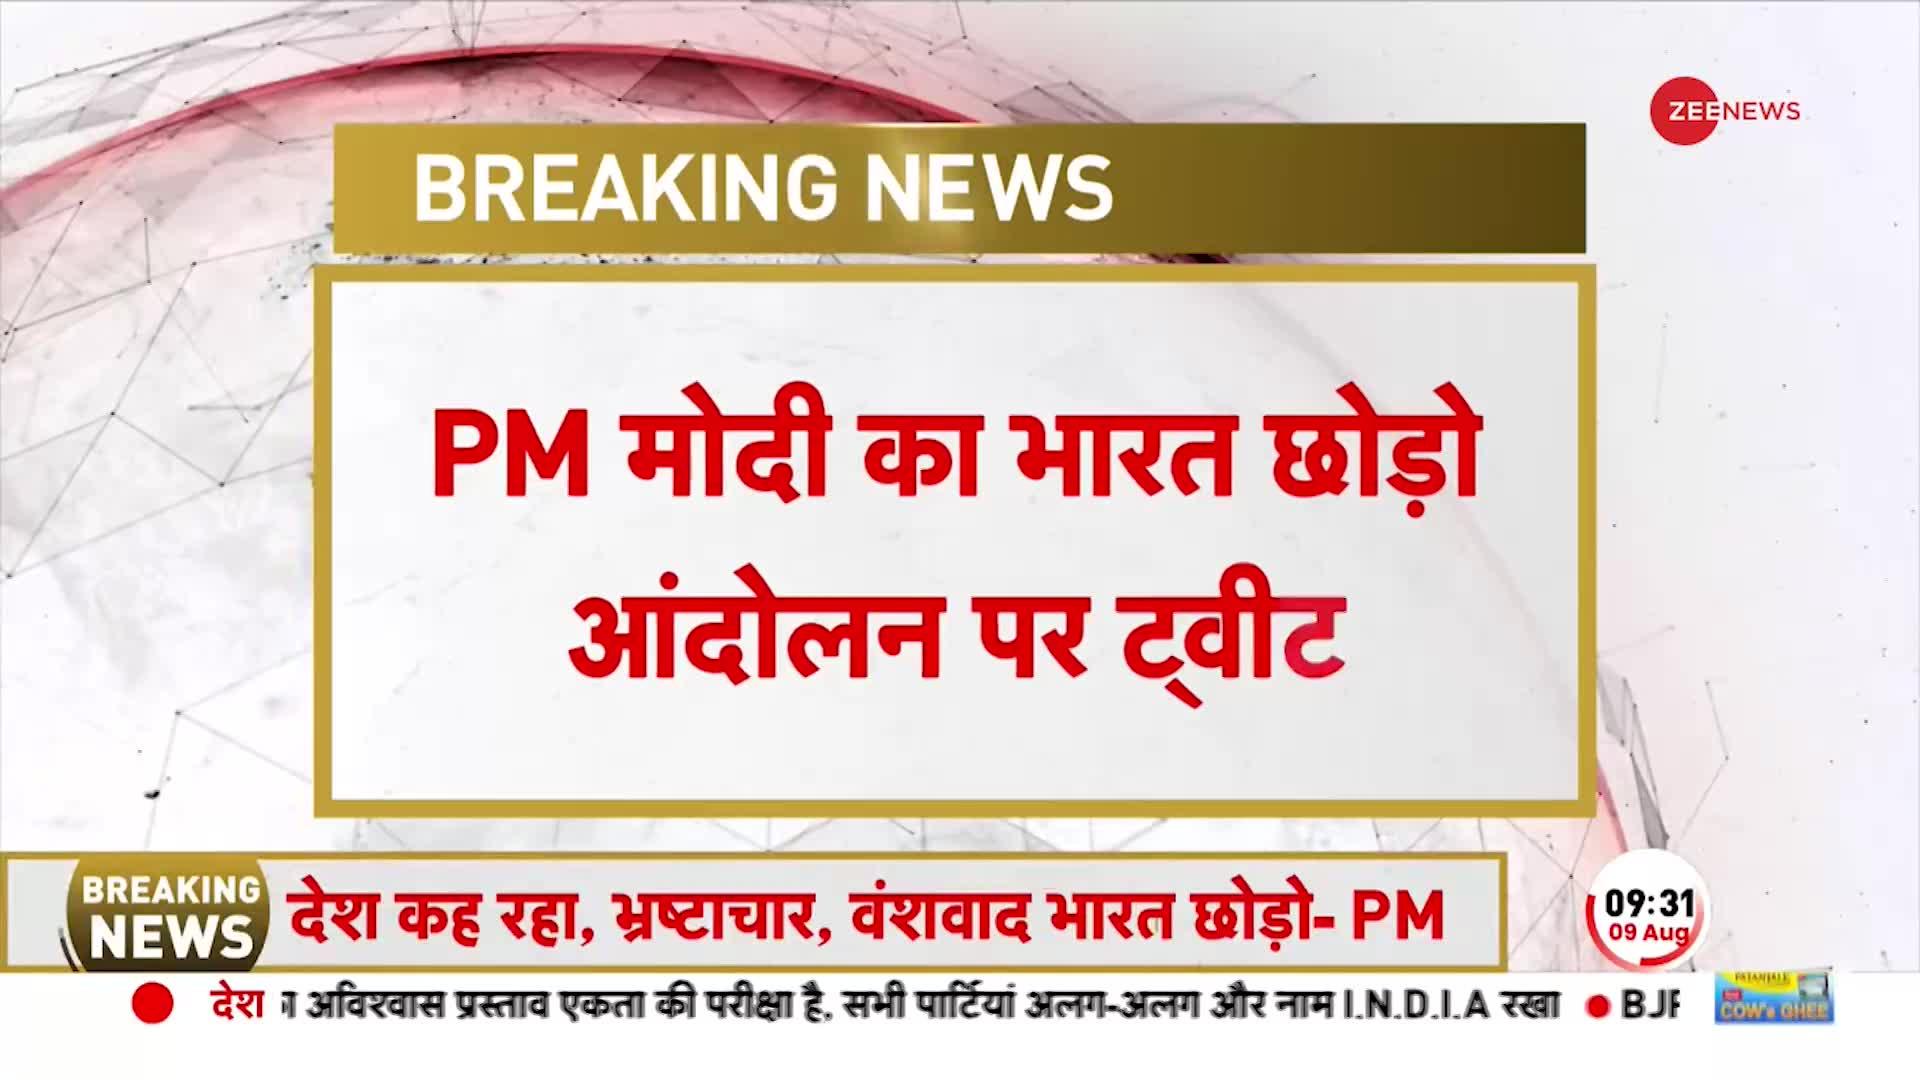 Bharat Chhodo Andolan पर PM Modi ने Tweet कर साधा निशाना, 'देश कह रहा भ्रष्टाचार, वंशवाद भारत छोड़ो'